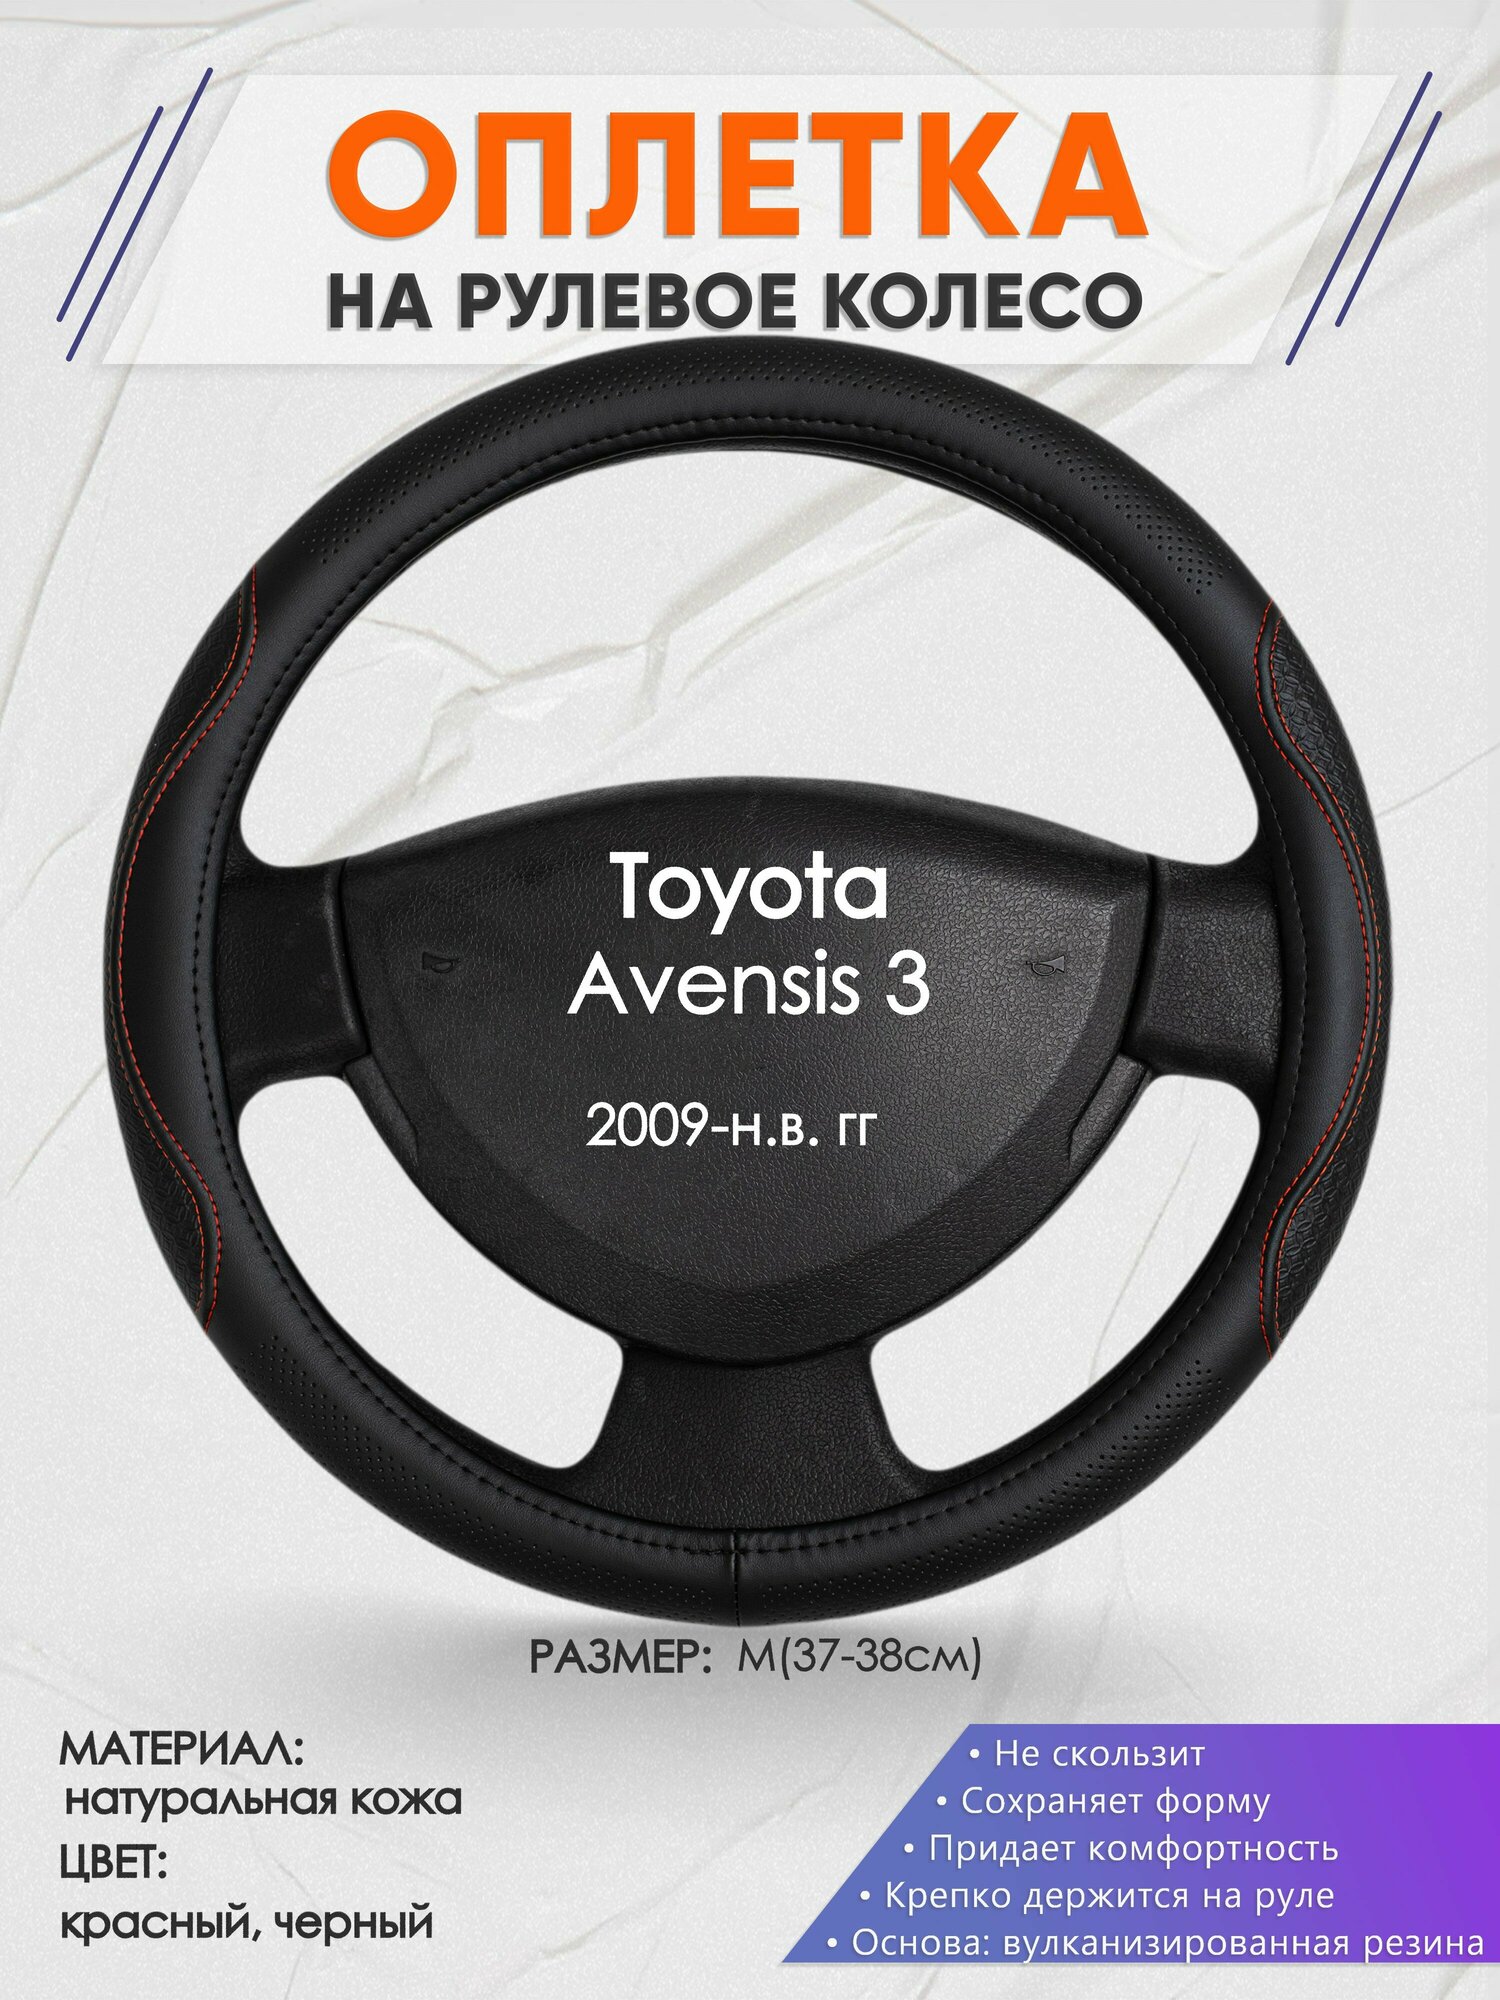 Оплетка на руль для Toyota Avensis 3(Тойота Авенсис 3) 2009-н. в, M(37-38см), Натуральная кожа 27